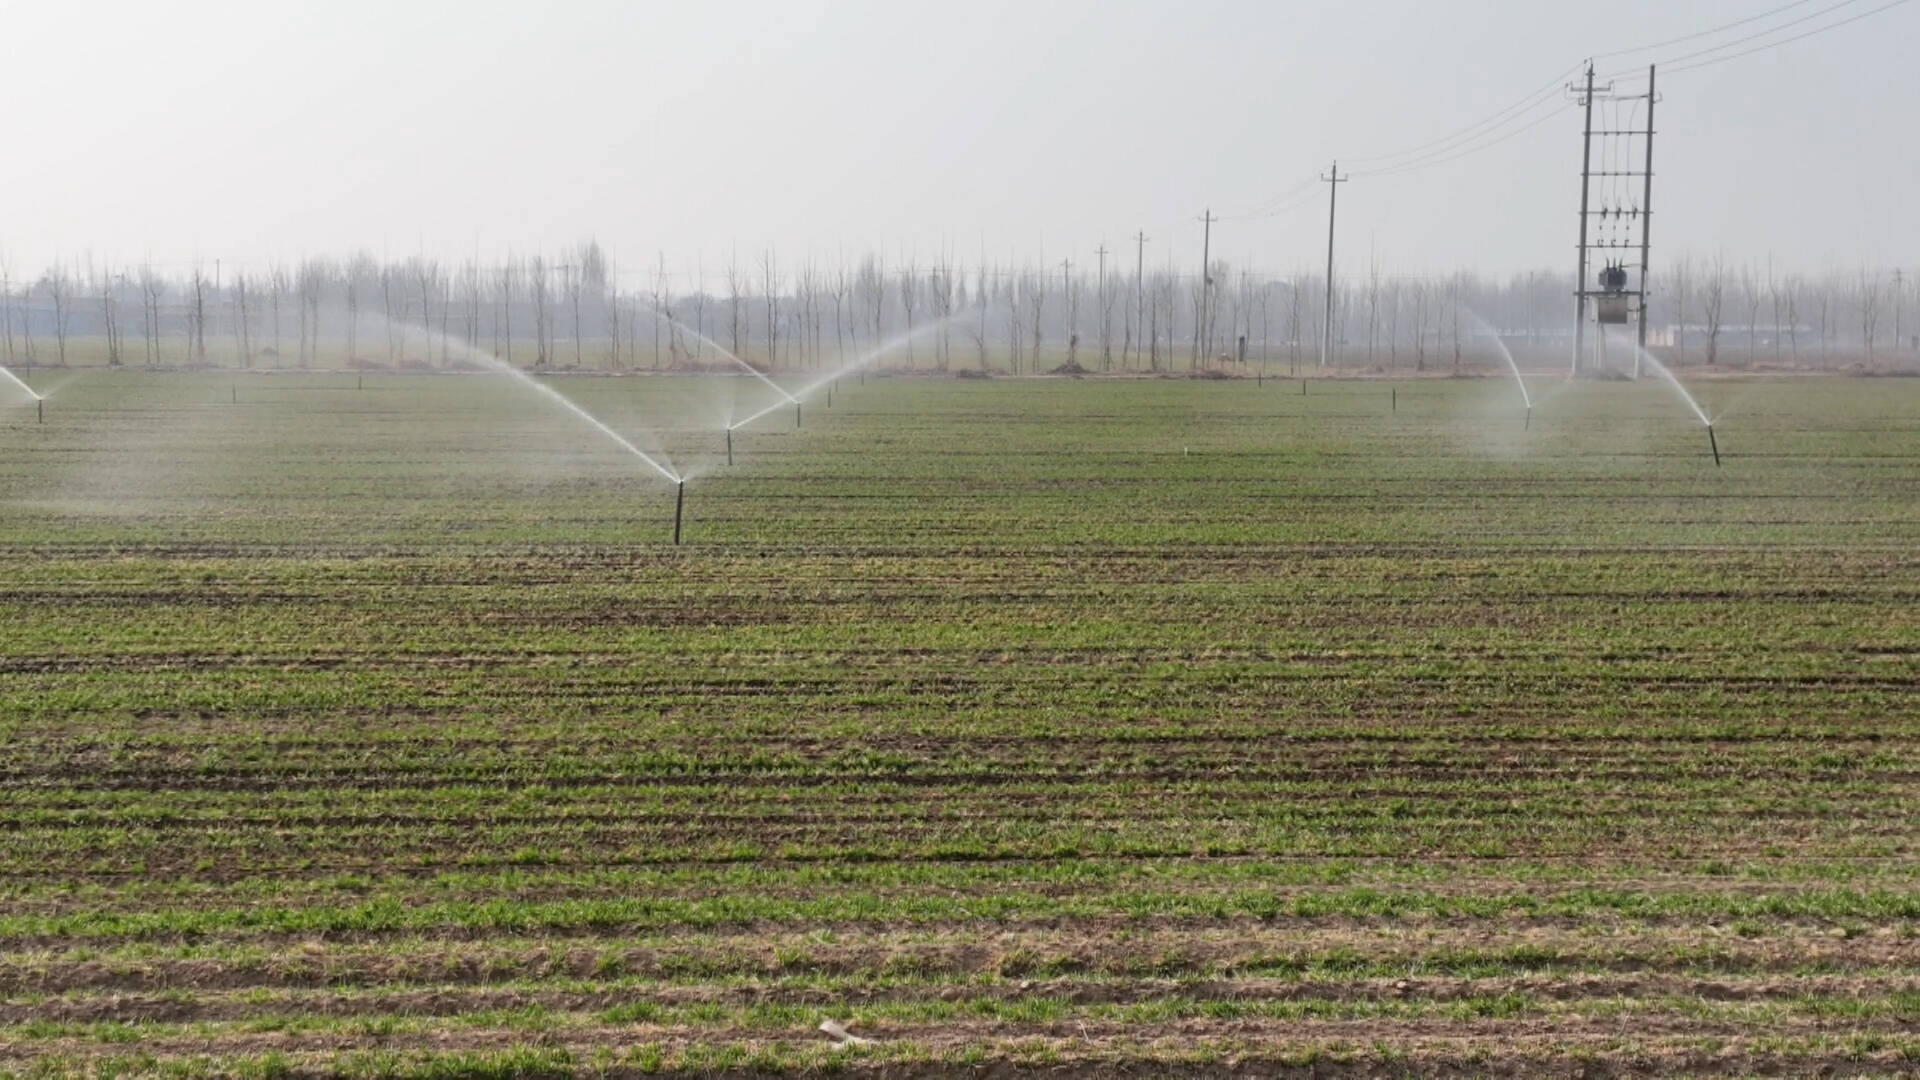 夏津：发展高效节水灌溉 拧紧农业“水龙头”